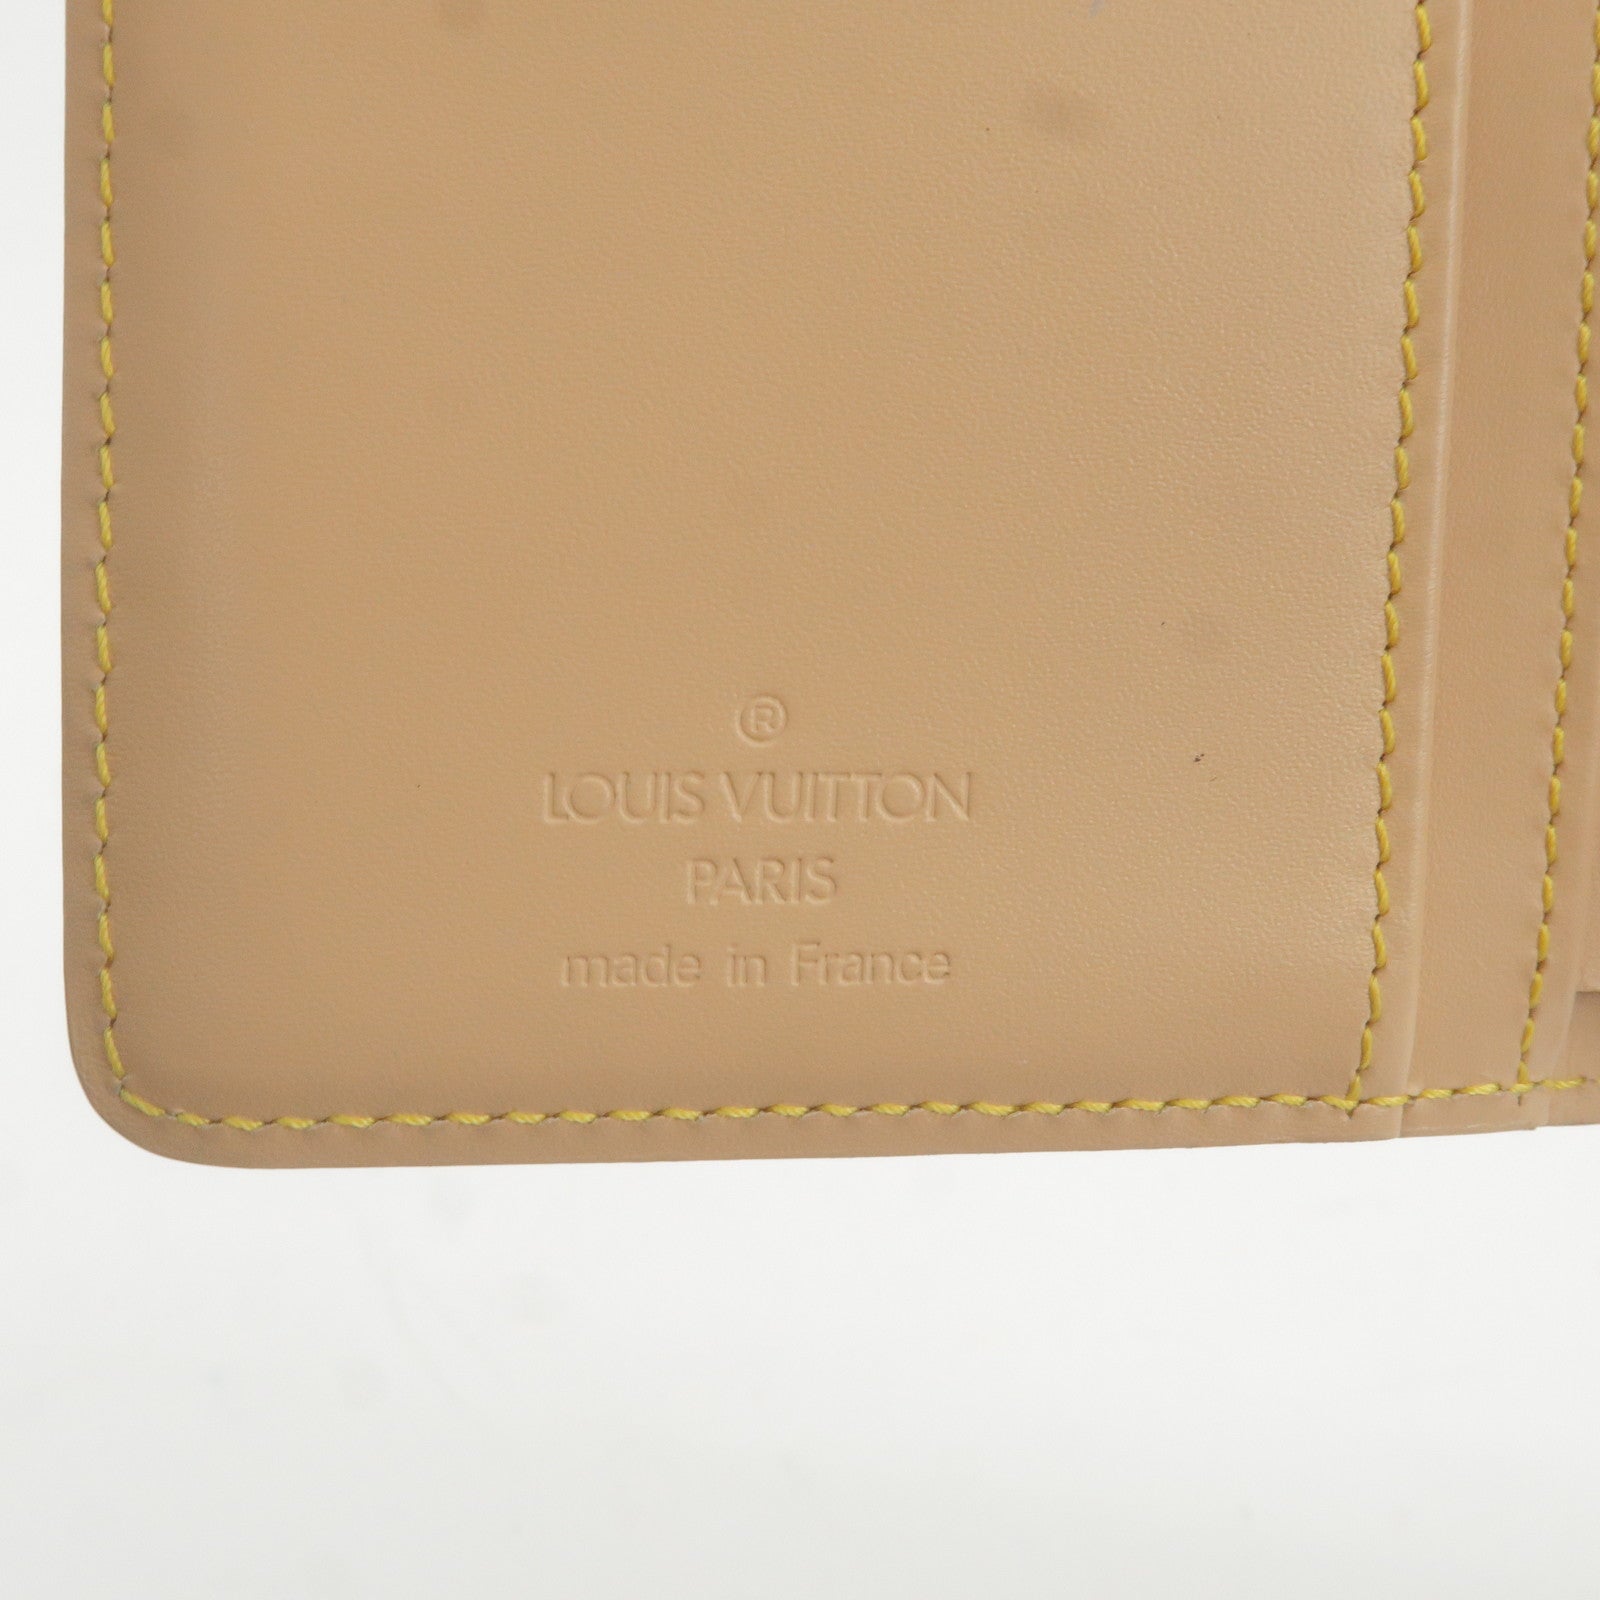 Louis Vuitton Off The Shoulder Bag 7129